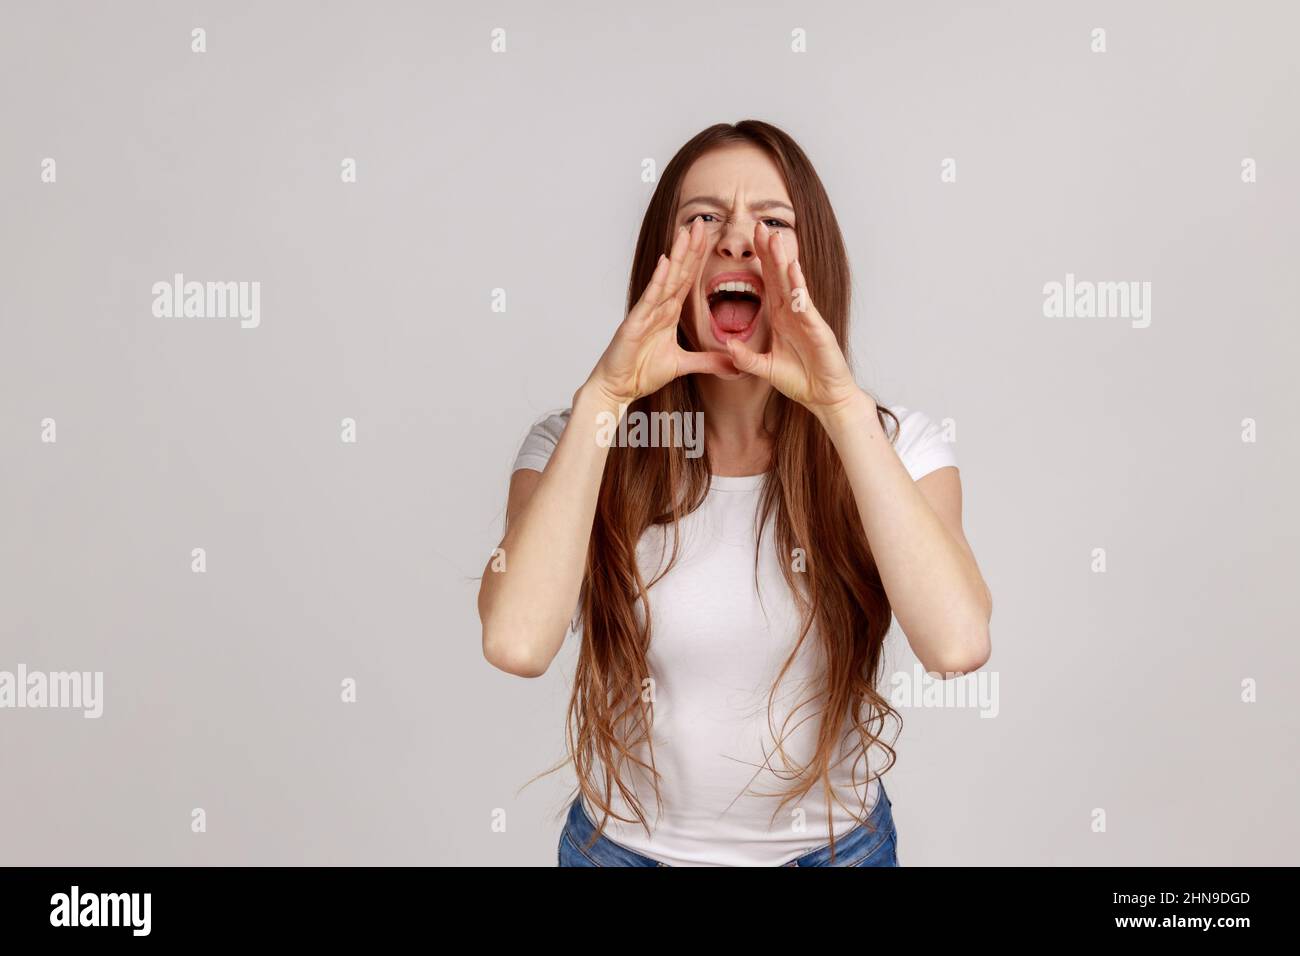 Porträt einer wütenden Frau mit dunklen Haaren, die steht und über schlechte Nachrichten oder Probleme schreit, ihre Hände in der Nähe des Mundes zu halten, mit weißem T-Shirt. Innenaufnahme des Studios isoliert auf grauem Hintergrund. Stockfoto